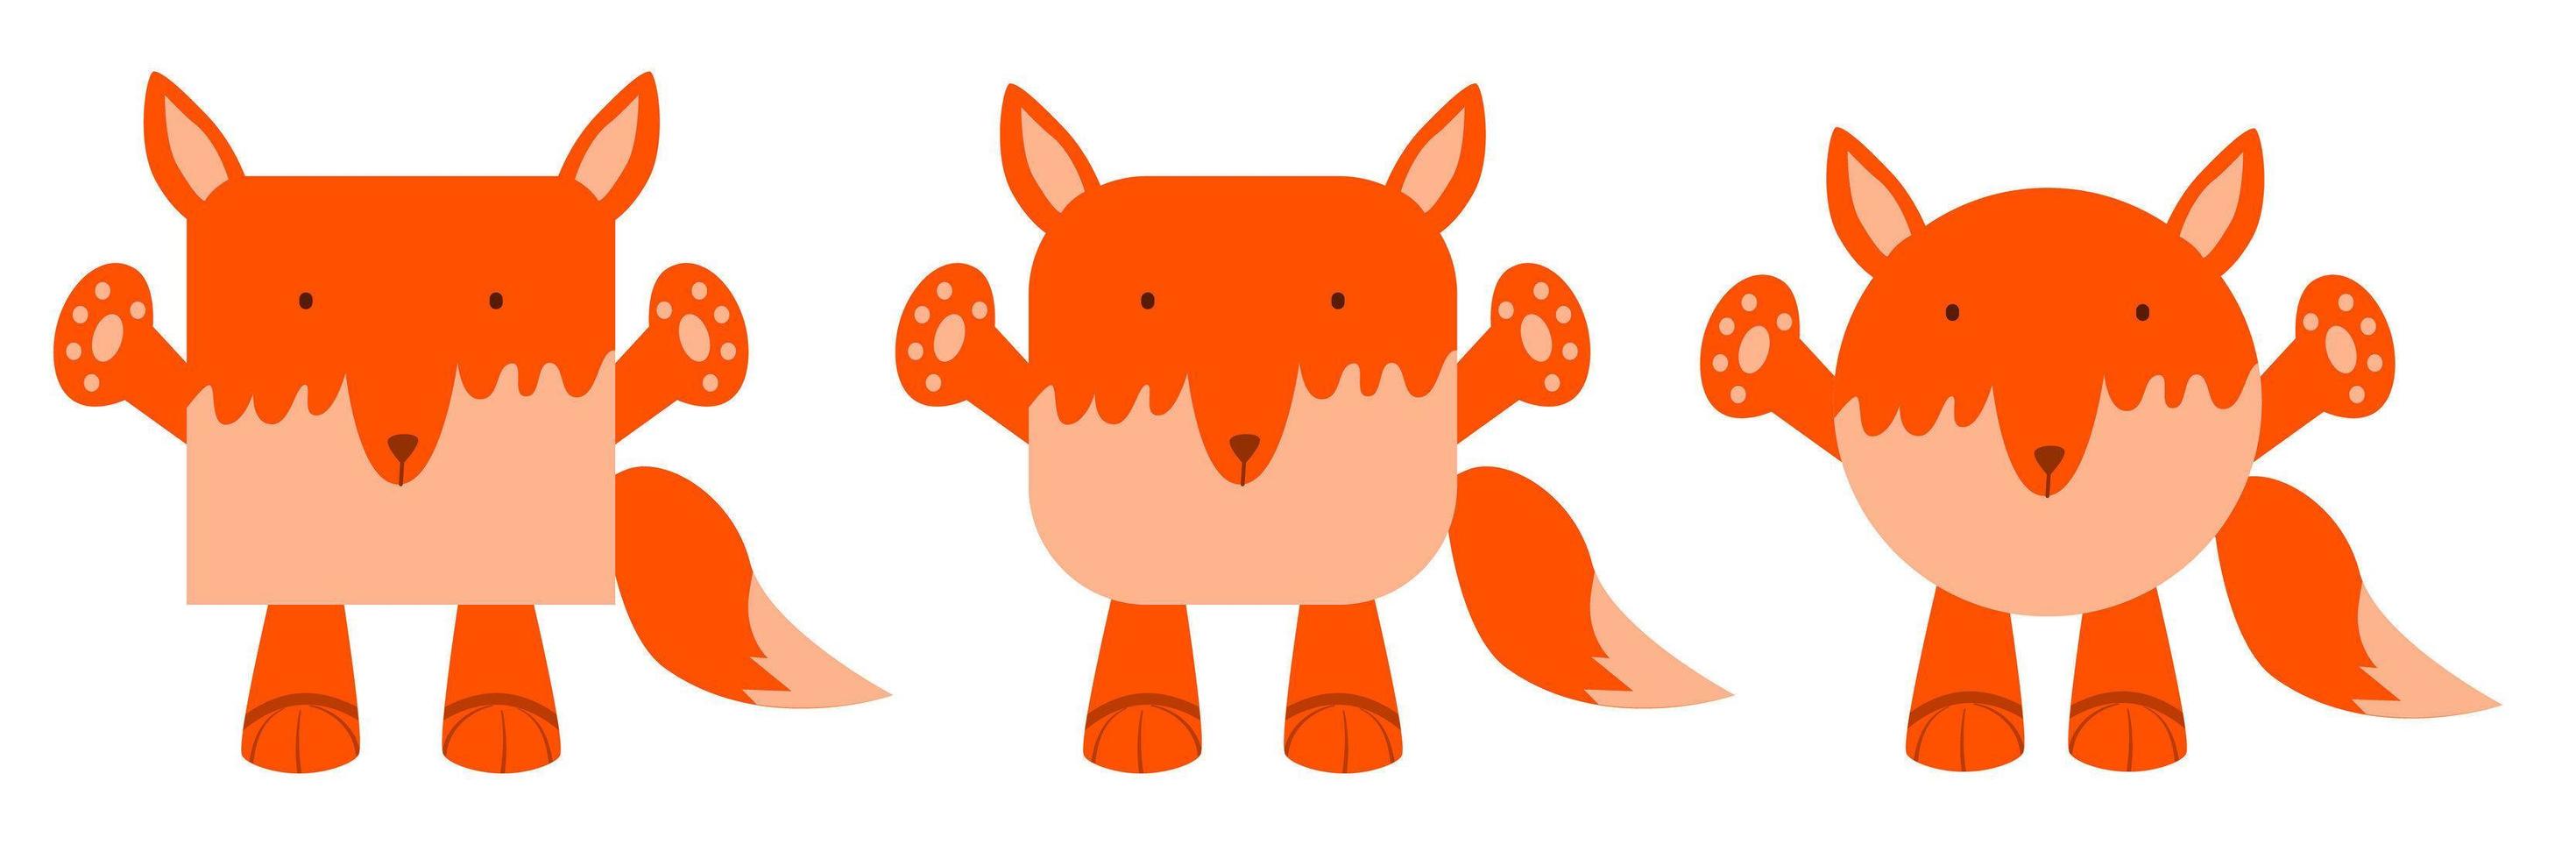 en uppsättning djur av fyrkantig och rund form. vektor illustration av en räv